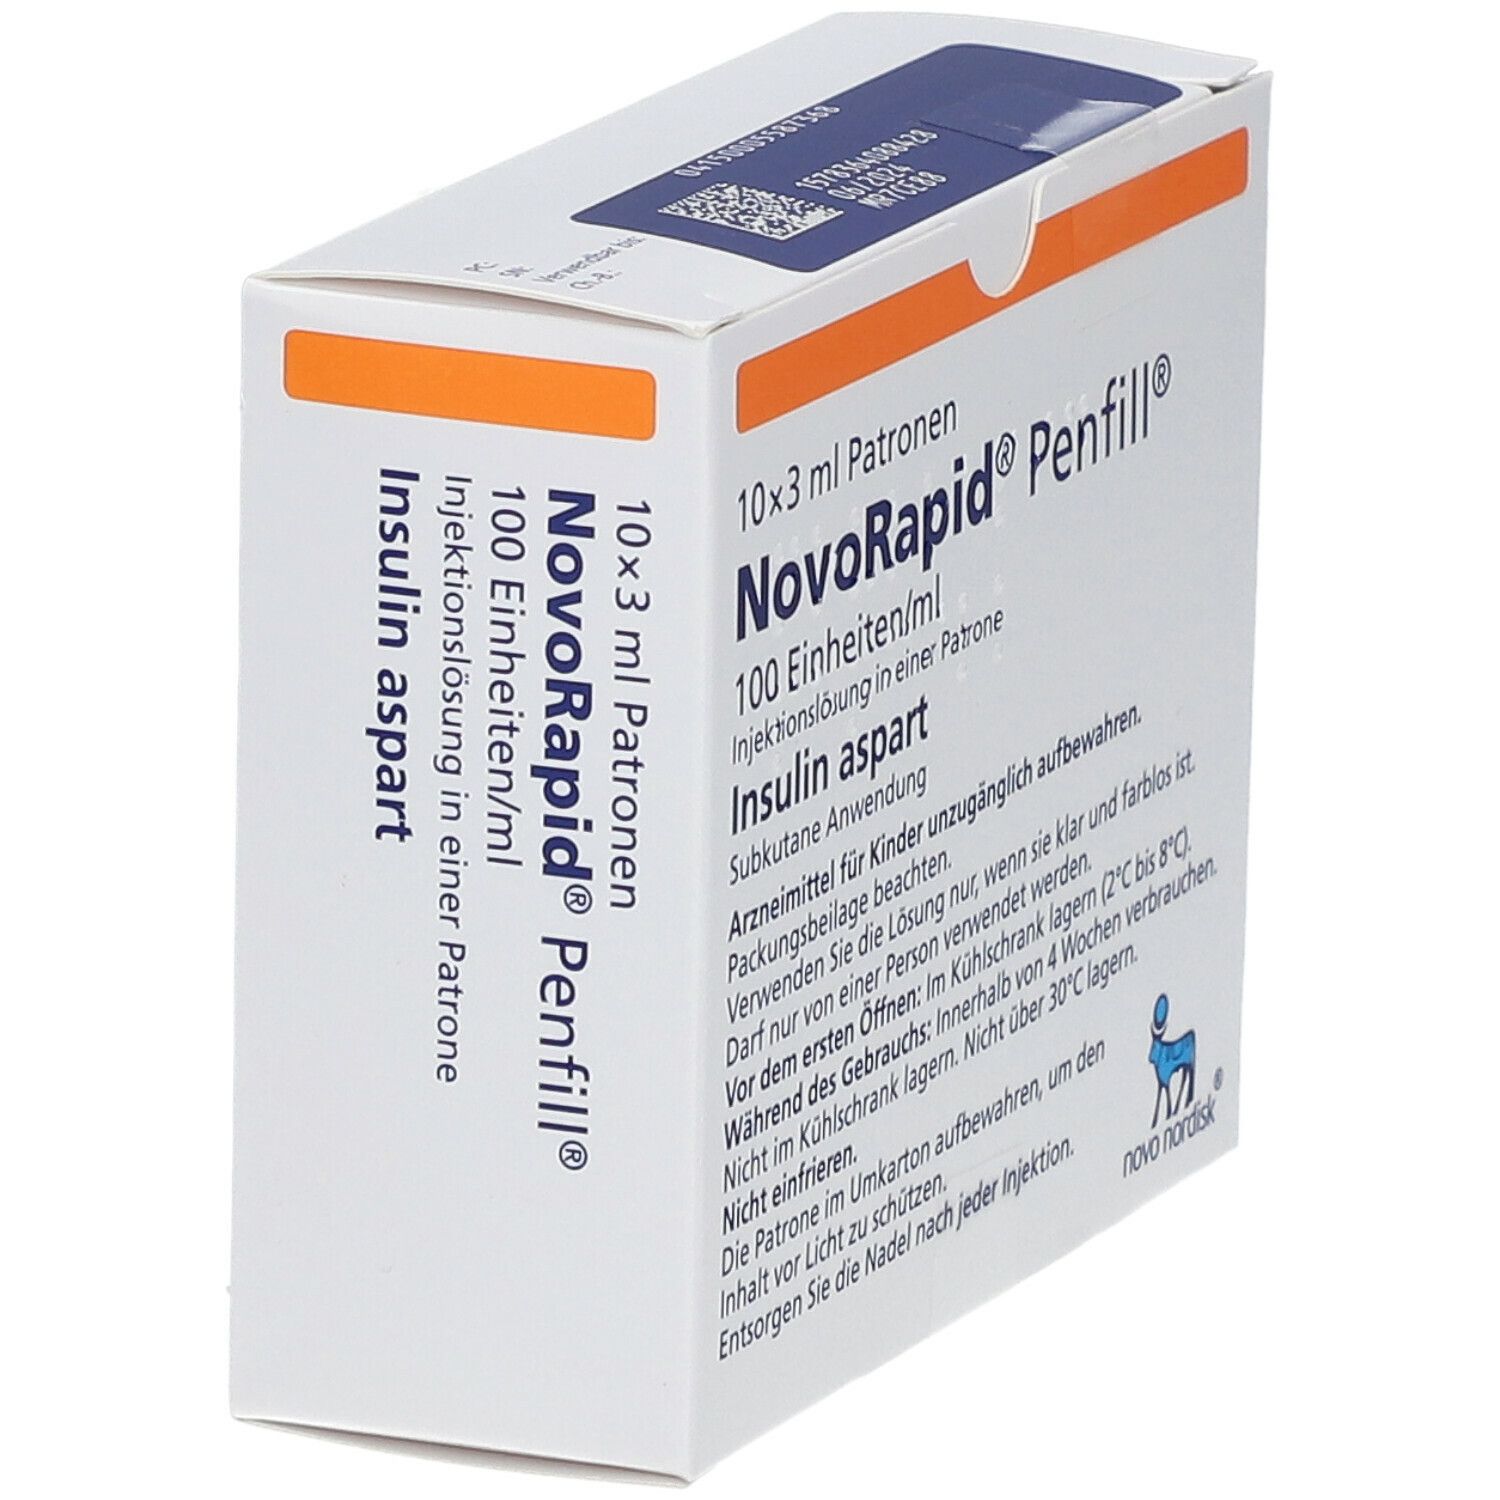 NovoRapid® Penfill® 100 Einheiten/ml